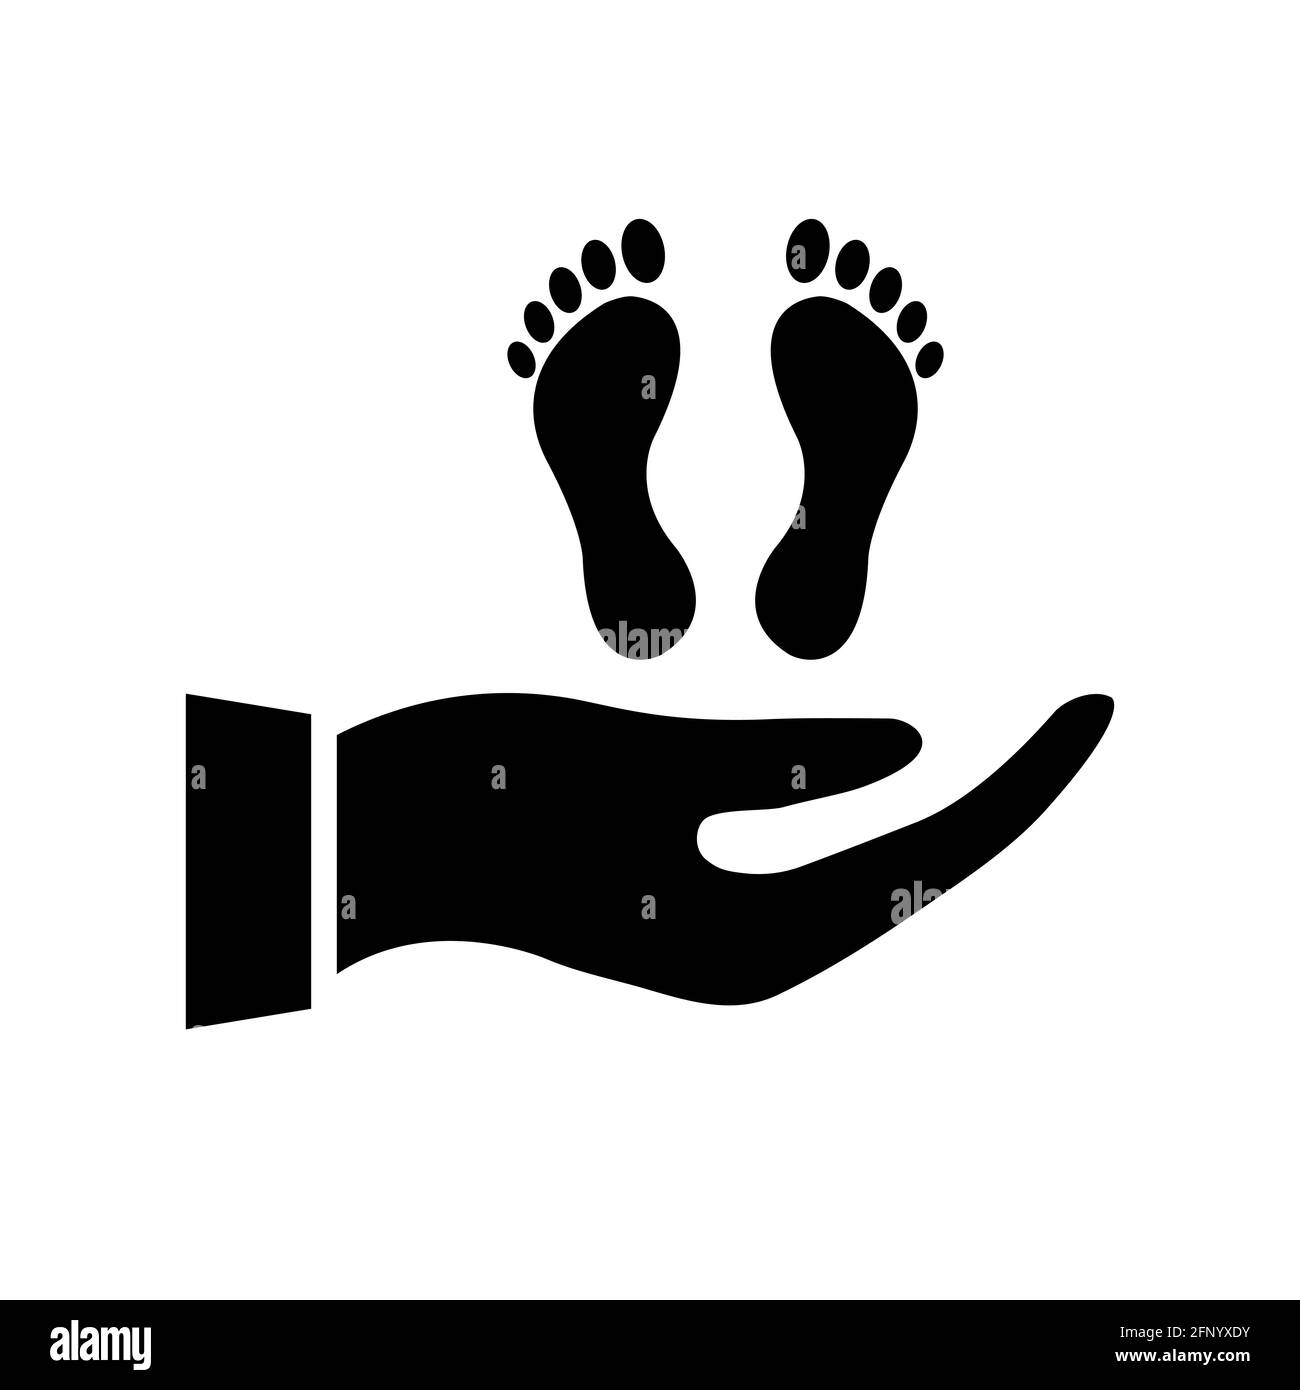 Menschliche Fußabdrücke auf der Hand. Hilfe schwarze Silhouette Konzept. Schutz- und Stützsymbol. Vektor auf Weiß isoliert Stock Vektor